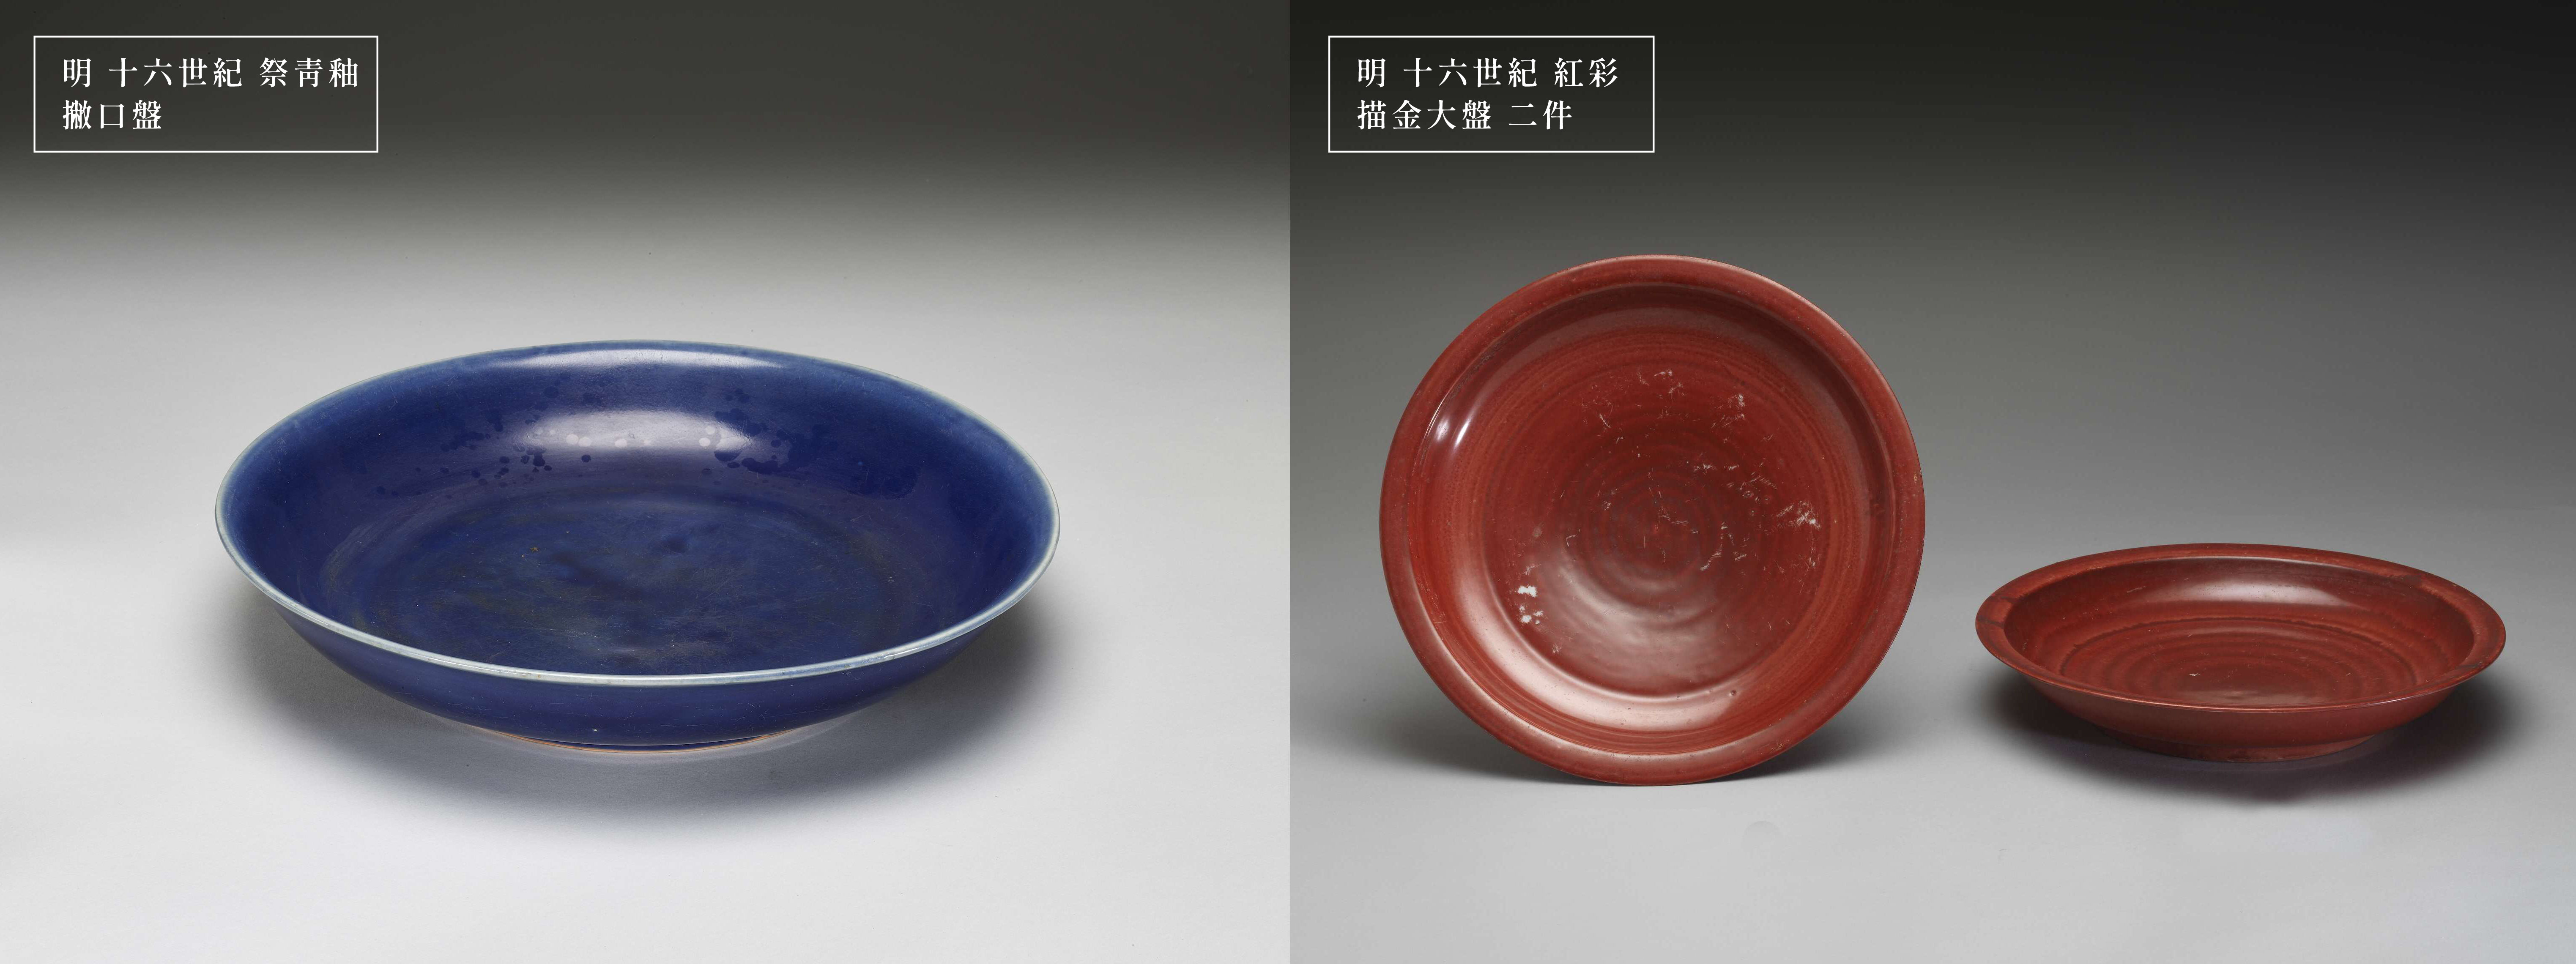 左：明十六世纪祭青釉撇口盘；右：明十六世纪红彩描金大盘二件